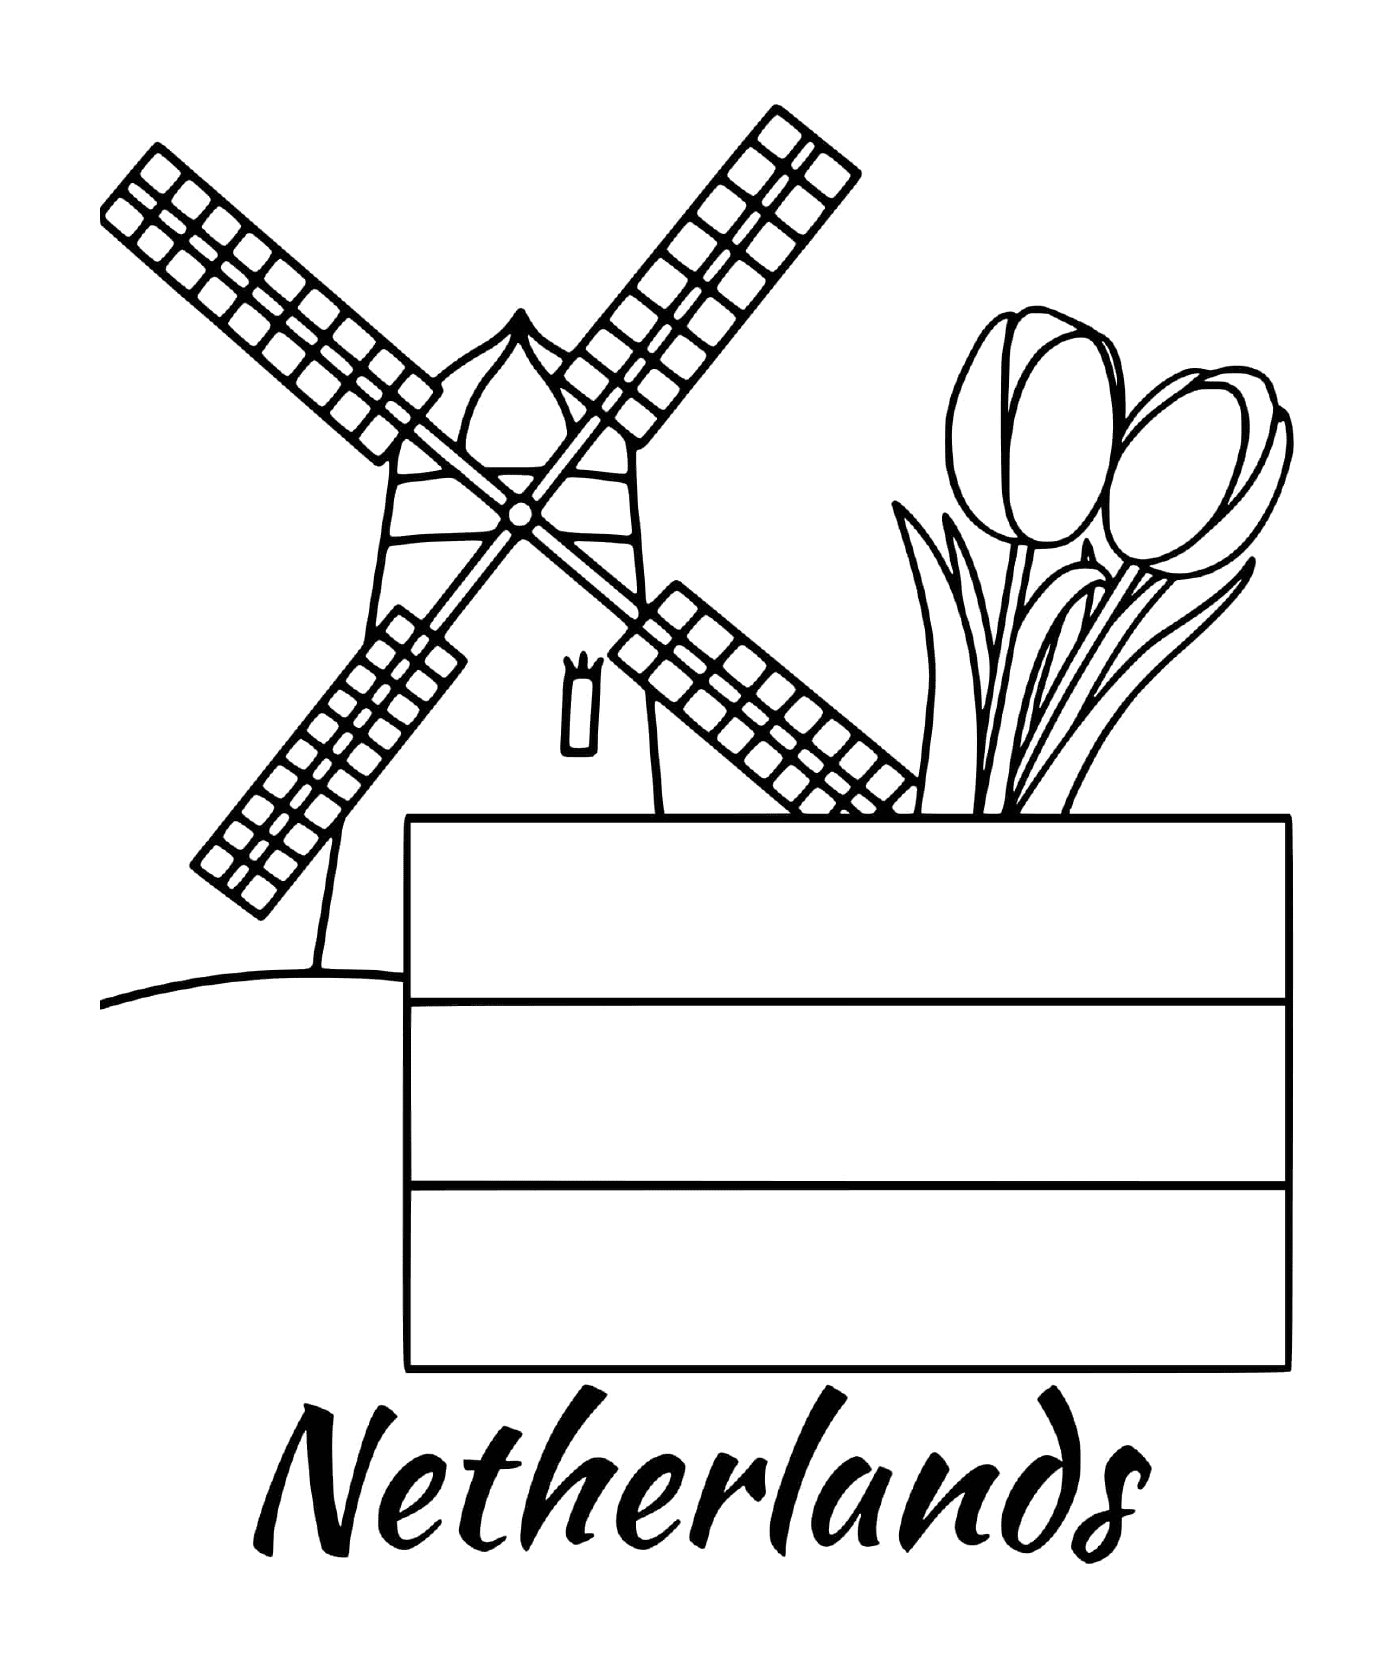  हवामीएल के साथ डच झंडा 